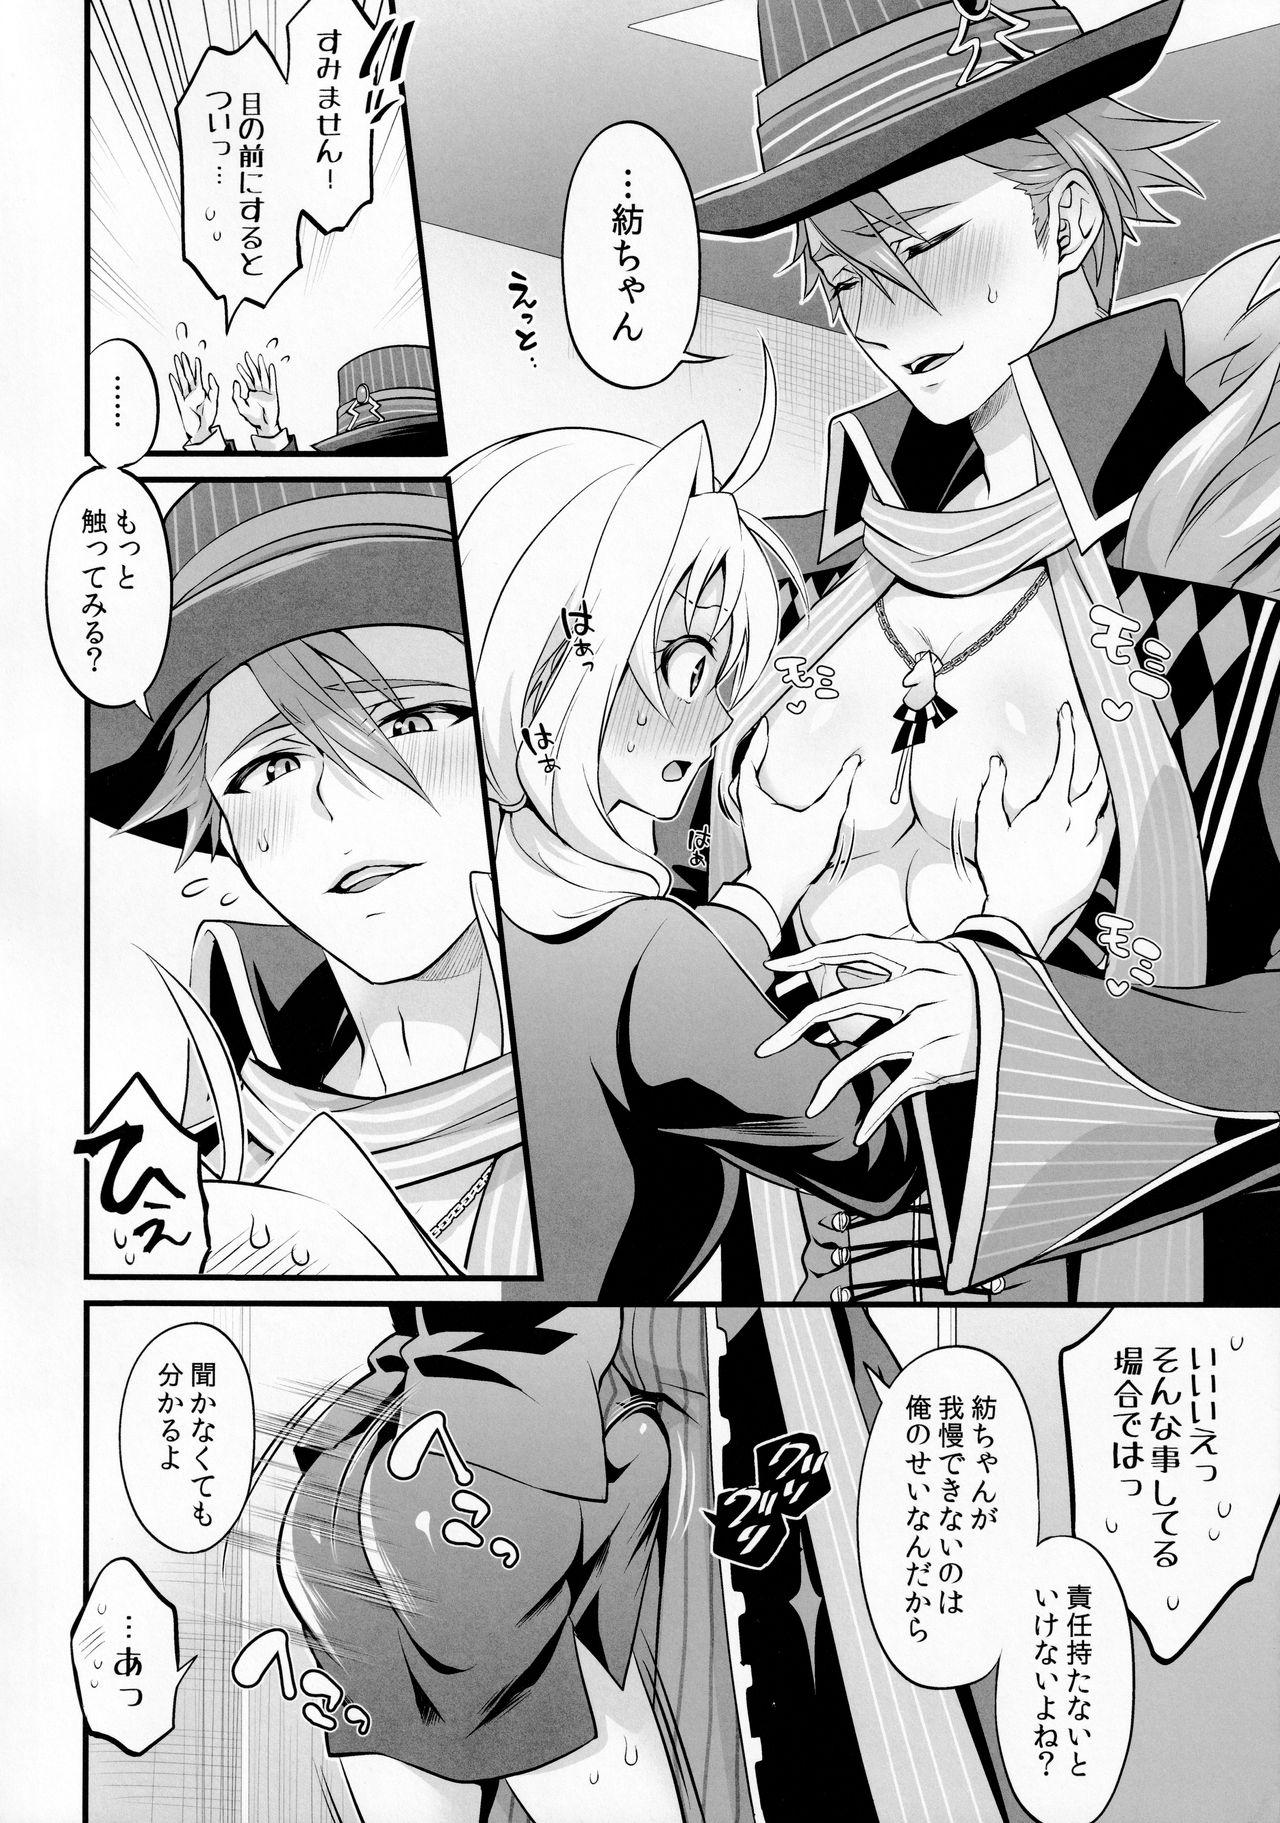 Self Watashi no Ochinchin ga Amaeta Gatterun desu! - Idolish7 Safado - Page 6